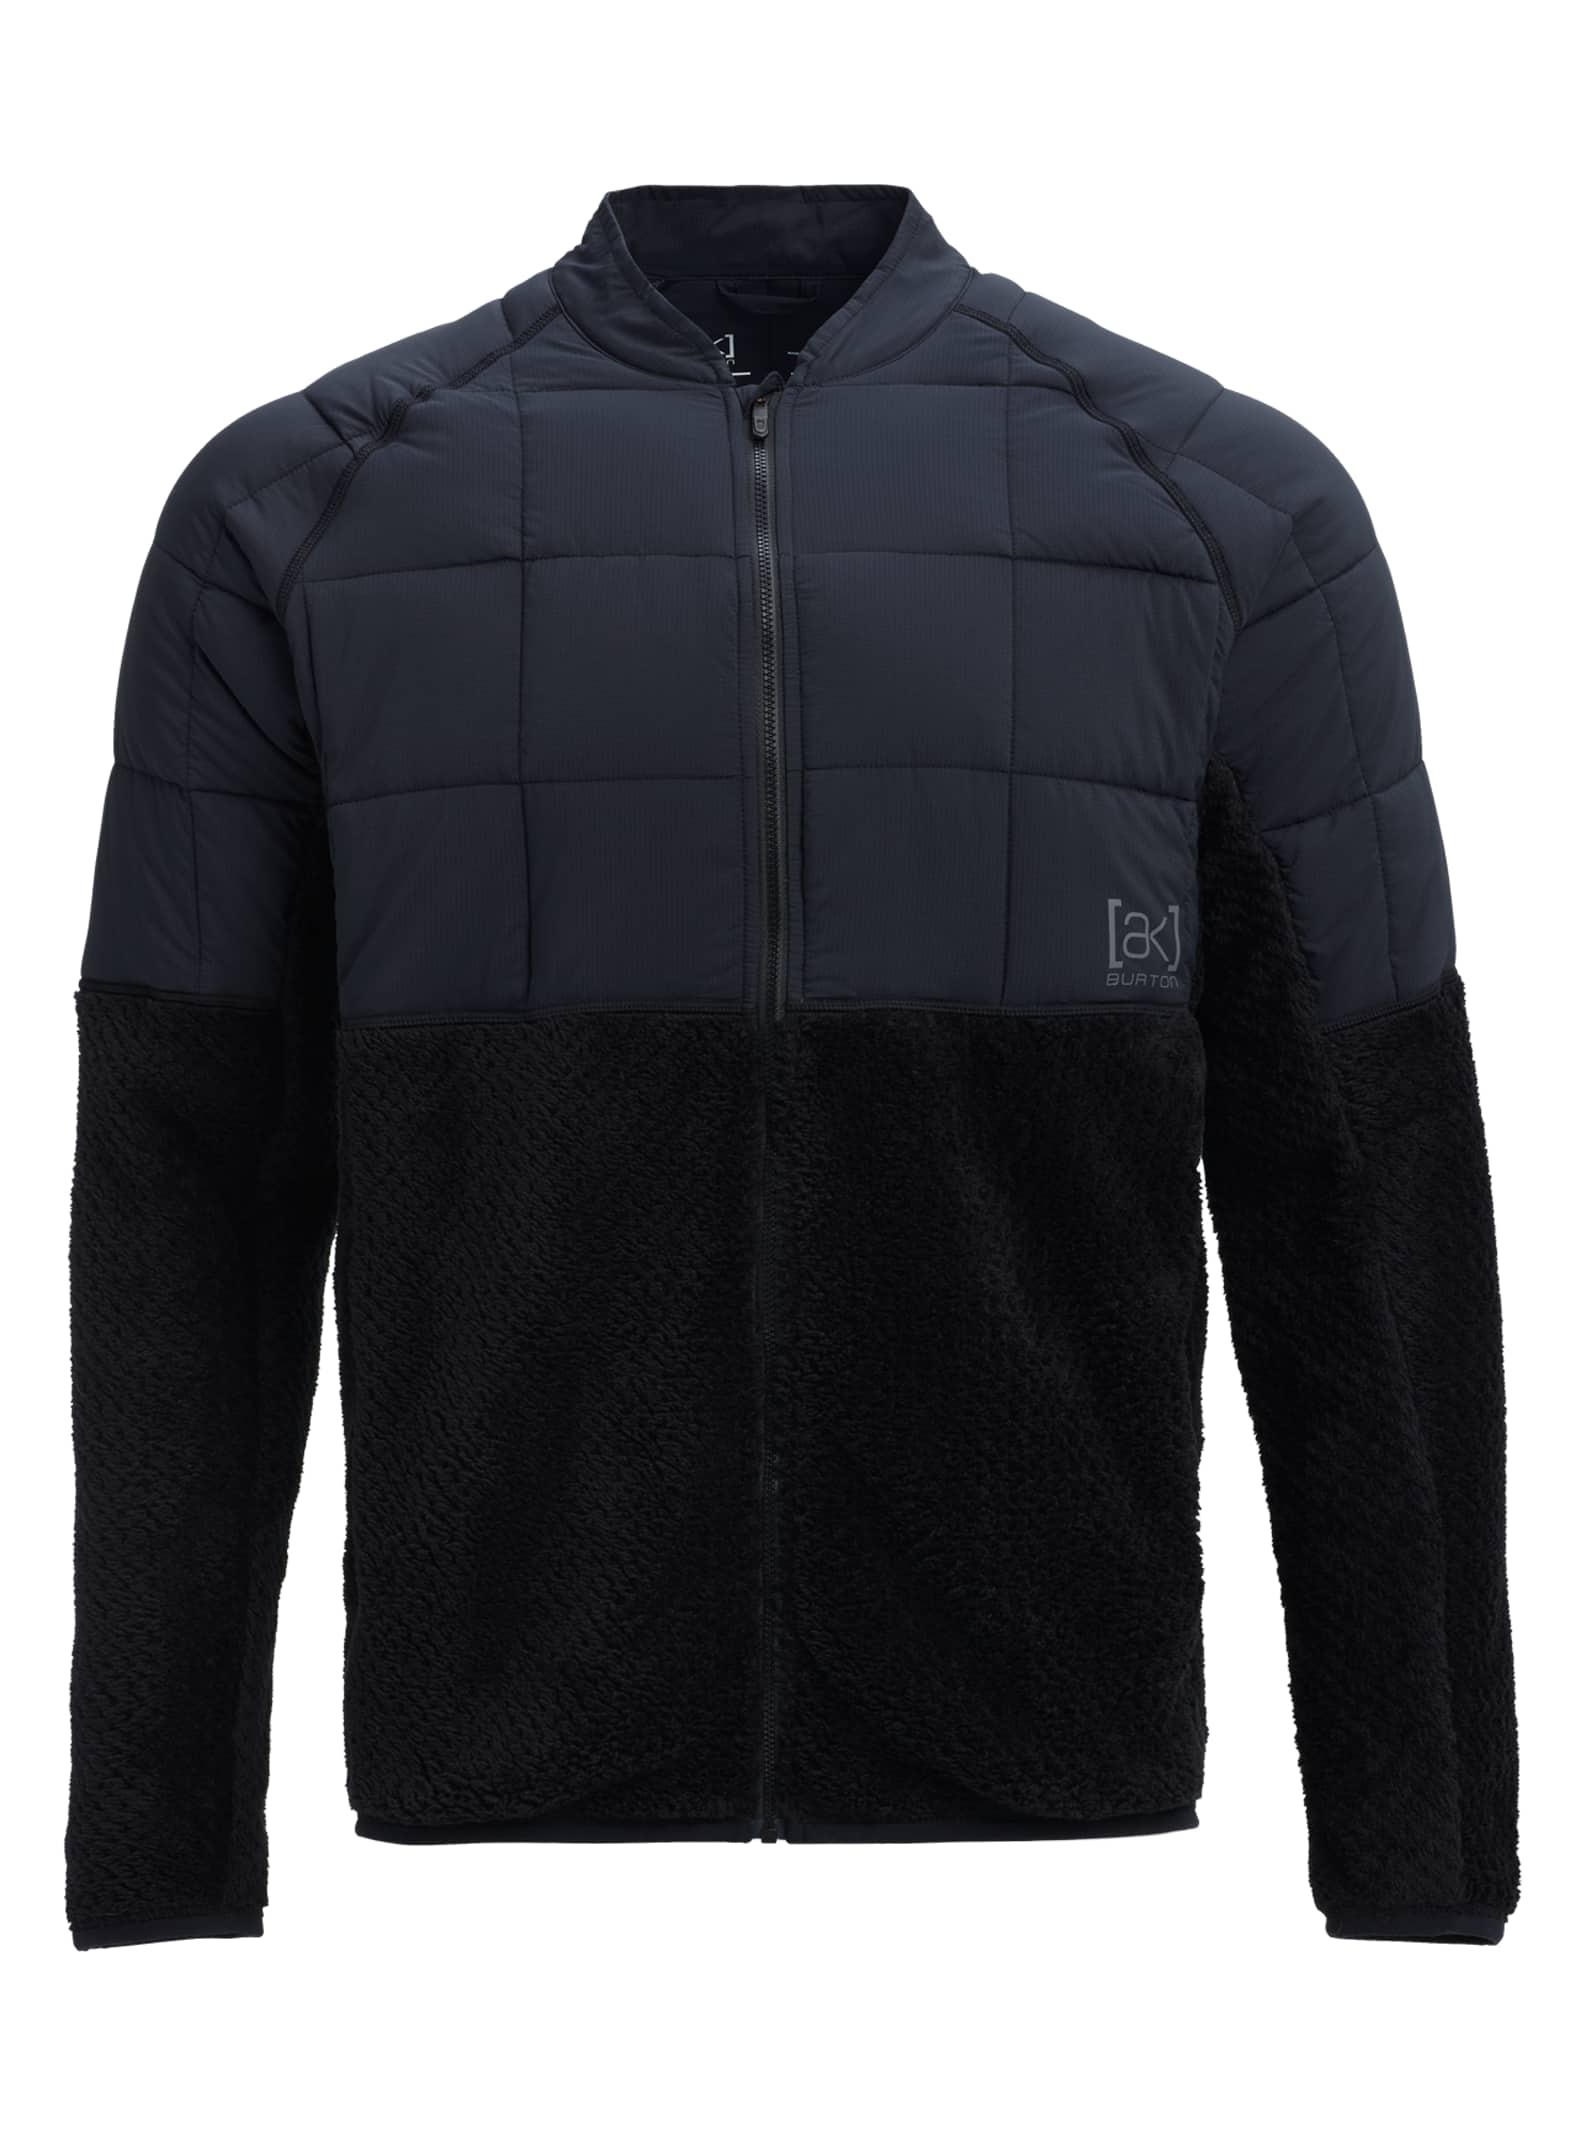 Men's Burton [ak]® Hybrid Jacket | Burton.com Winter 2019 US